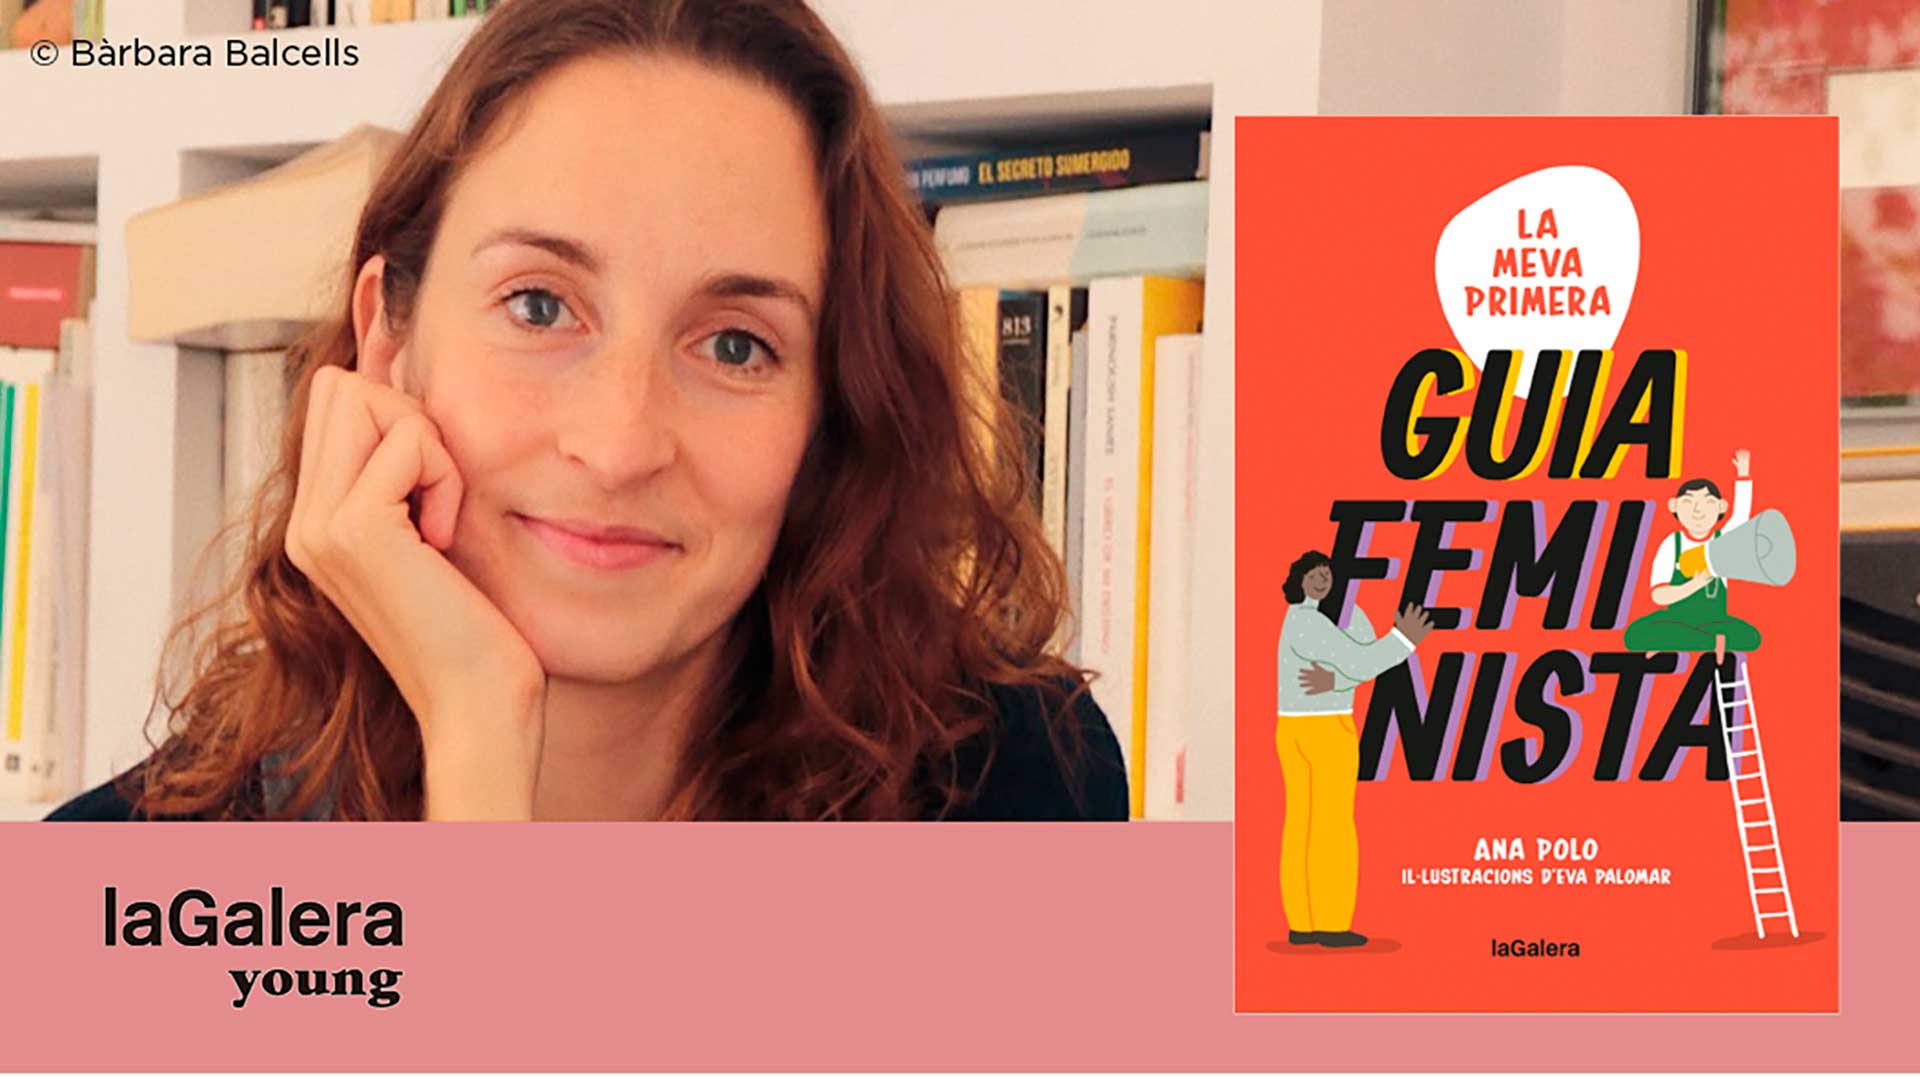 Presentació del llibre ‘La meva primera guia feminista’ d’Ana Polo